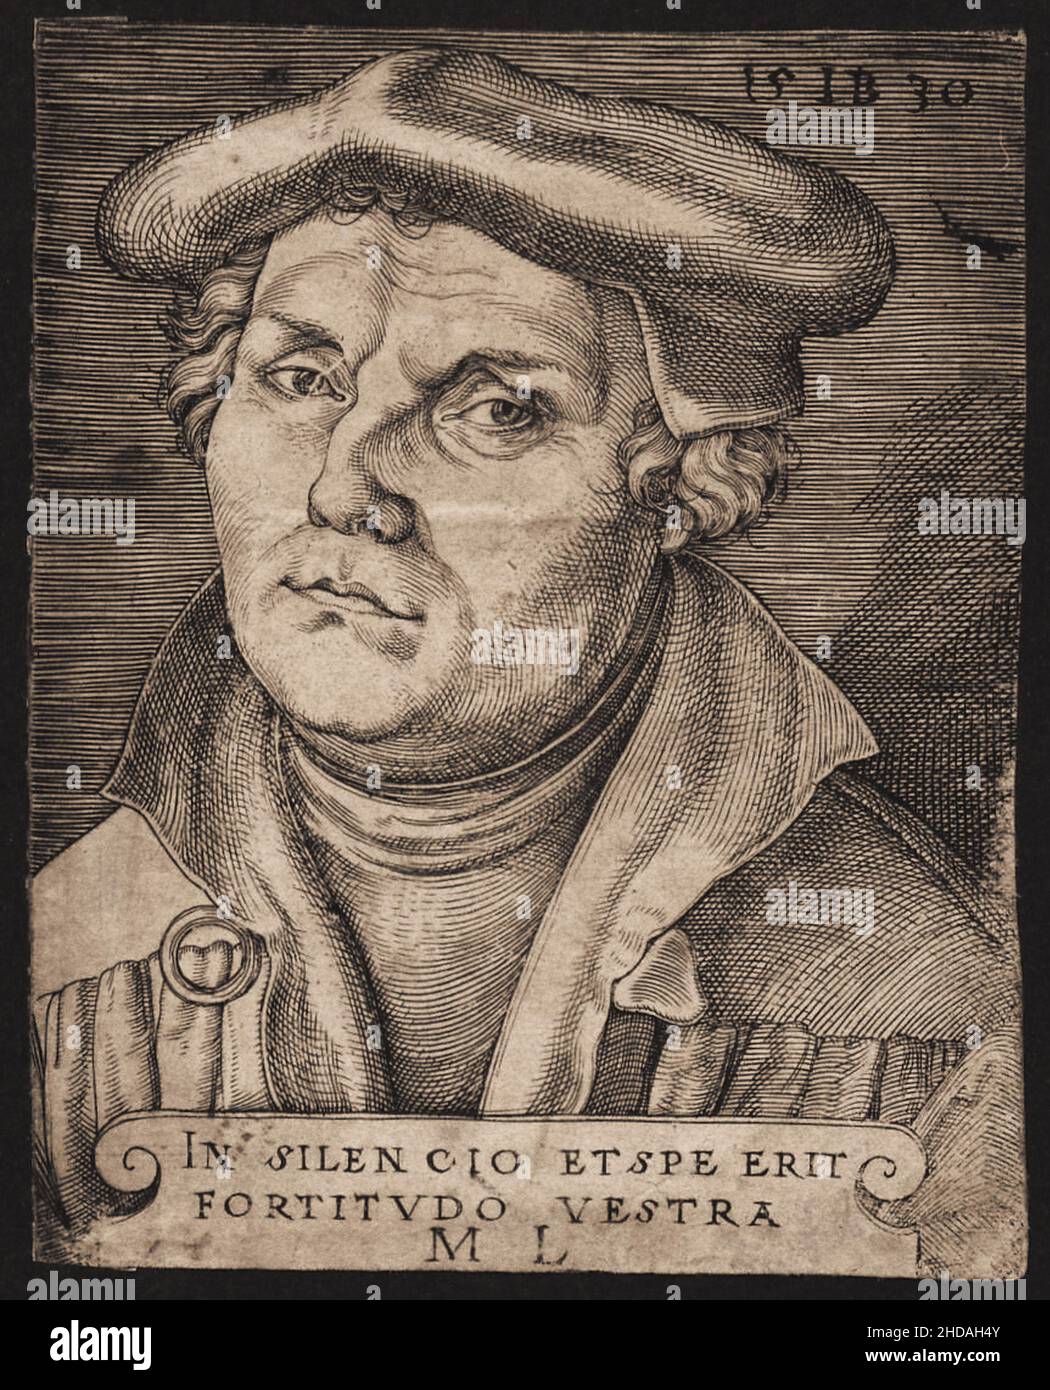 Ritratto medievale di Martin Lutero. Martin Lutero (1483 – 1546) è stato un professore tedesco di teologia, prete, autore, compositore, ex agostiniano 1530 Foto Stock